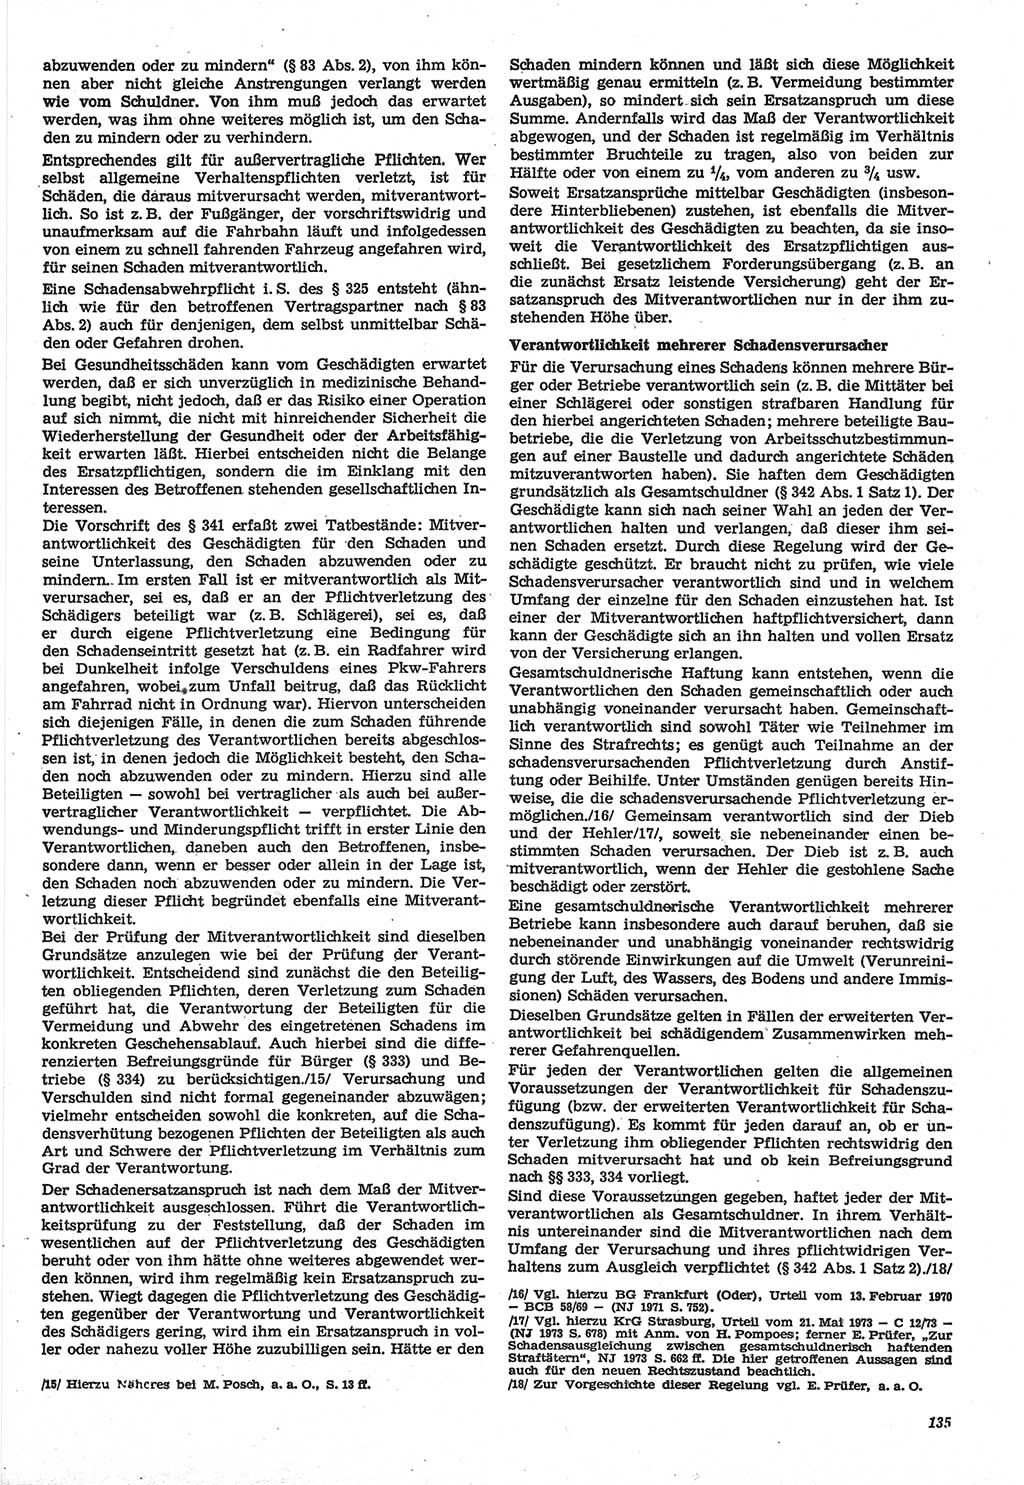 Neue Justiz (NJ), Zeitschrift für Recht und Rechtswissenschaft-Zeitschrift, sozialistisches Recht und Gesetzlichkeit, 31. Jahrgang 1977, Seite 135 (NJ DDR 1977, S. 135)